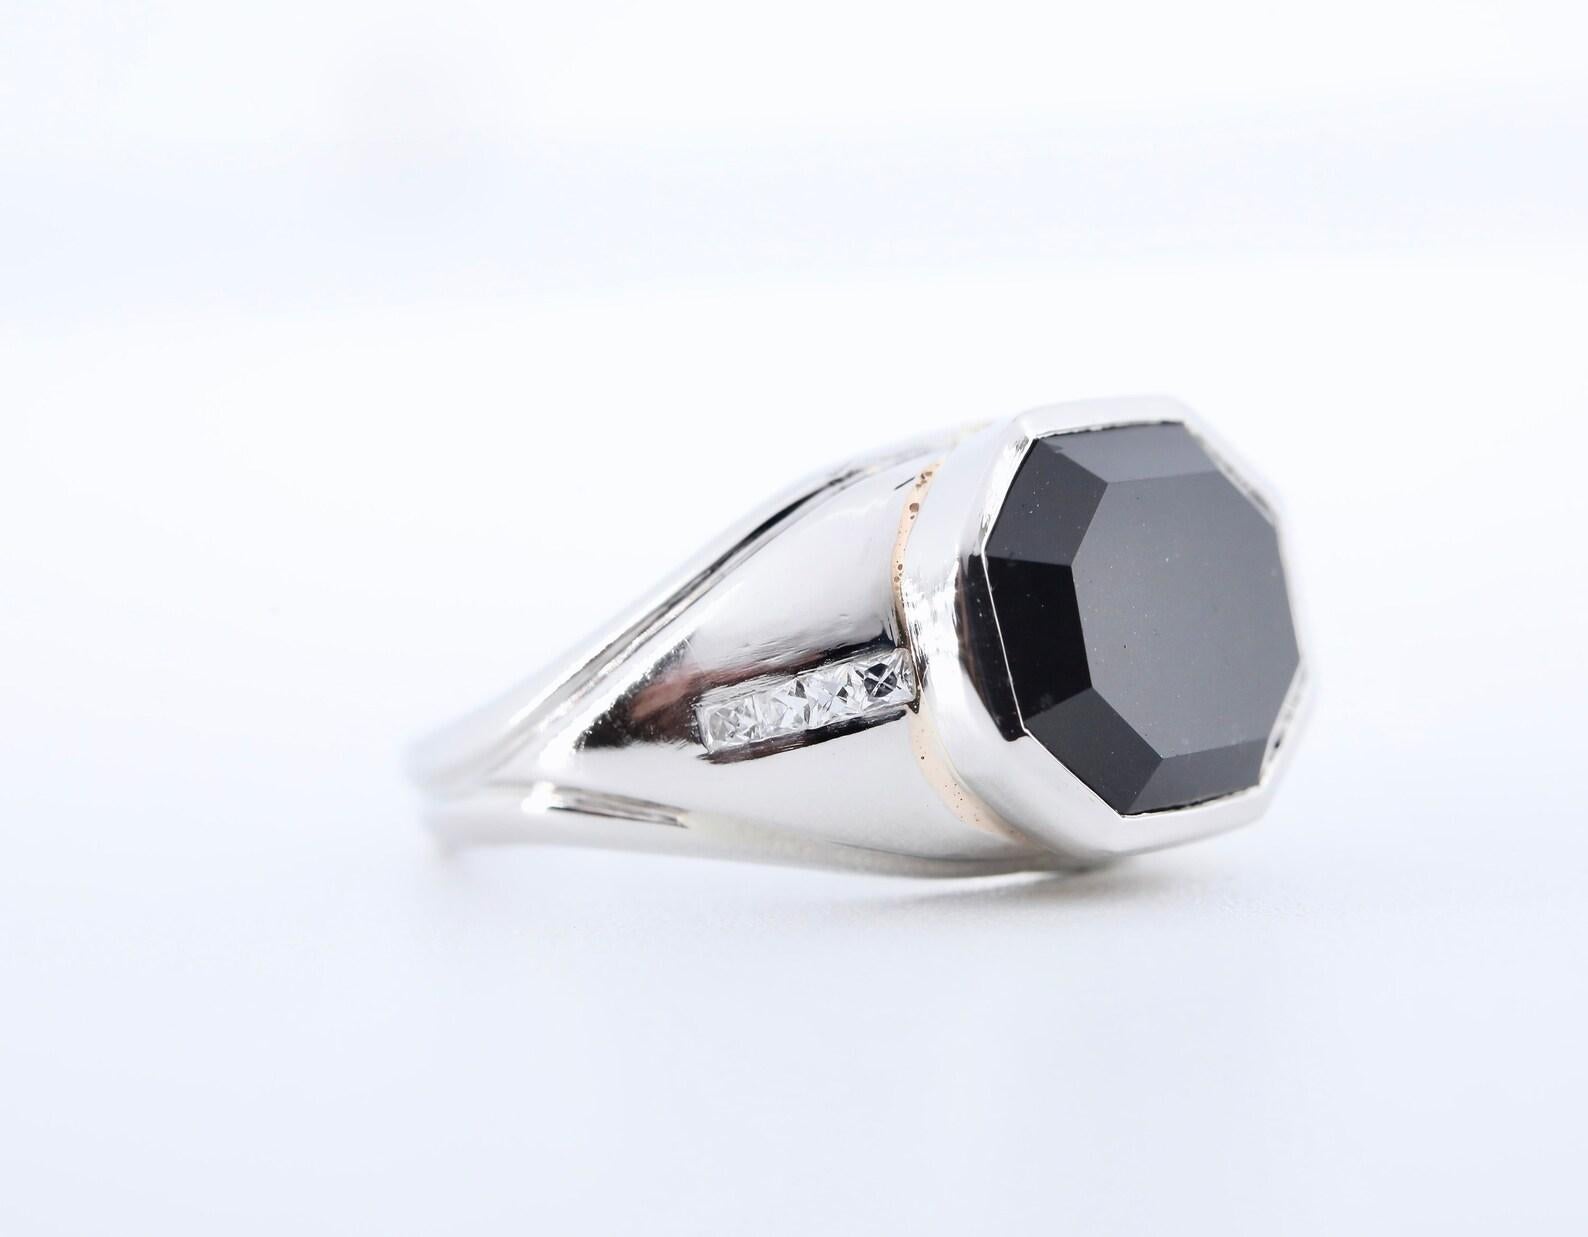 Bague unisexe d'époque Art déco en platine par Marcus & Co.

Au centre, un spinelle noir rectangulaire taillé en escalier mesurant 11 mm sur 9 mm est serti dans une lunette en platine poli.

Le spinelle noir est encadré par huit diamants de taille